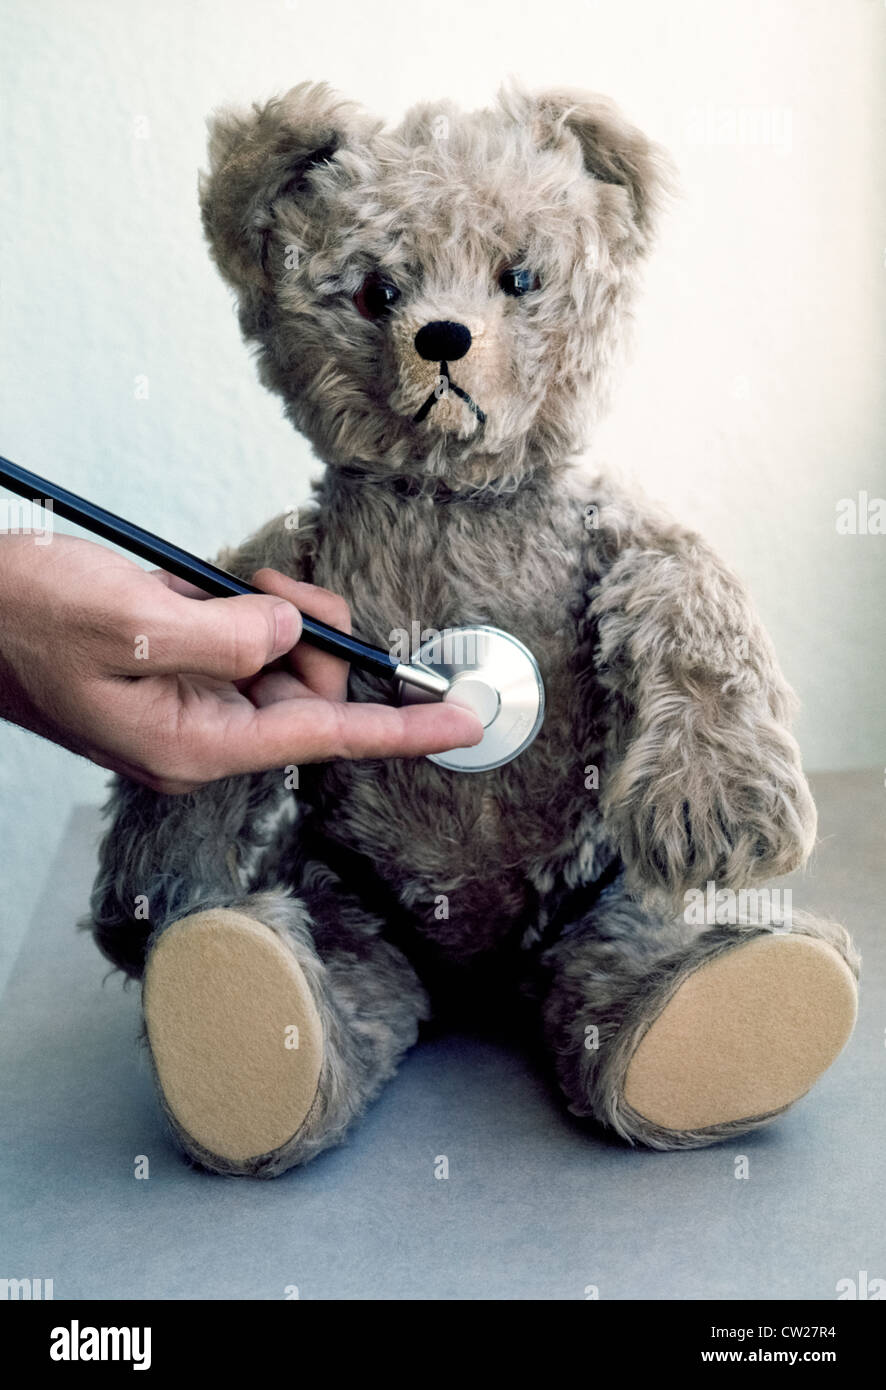 Eine medizinische Stethoskop wird verwendet, um ein Spielzeug Teddybär Herzschlag junge Kinder nicht zu den Arzt Instruments fürchten lehren zu überprüfen. Stockfoto